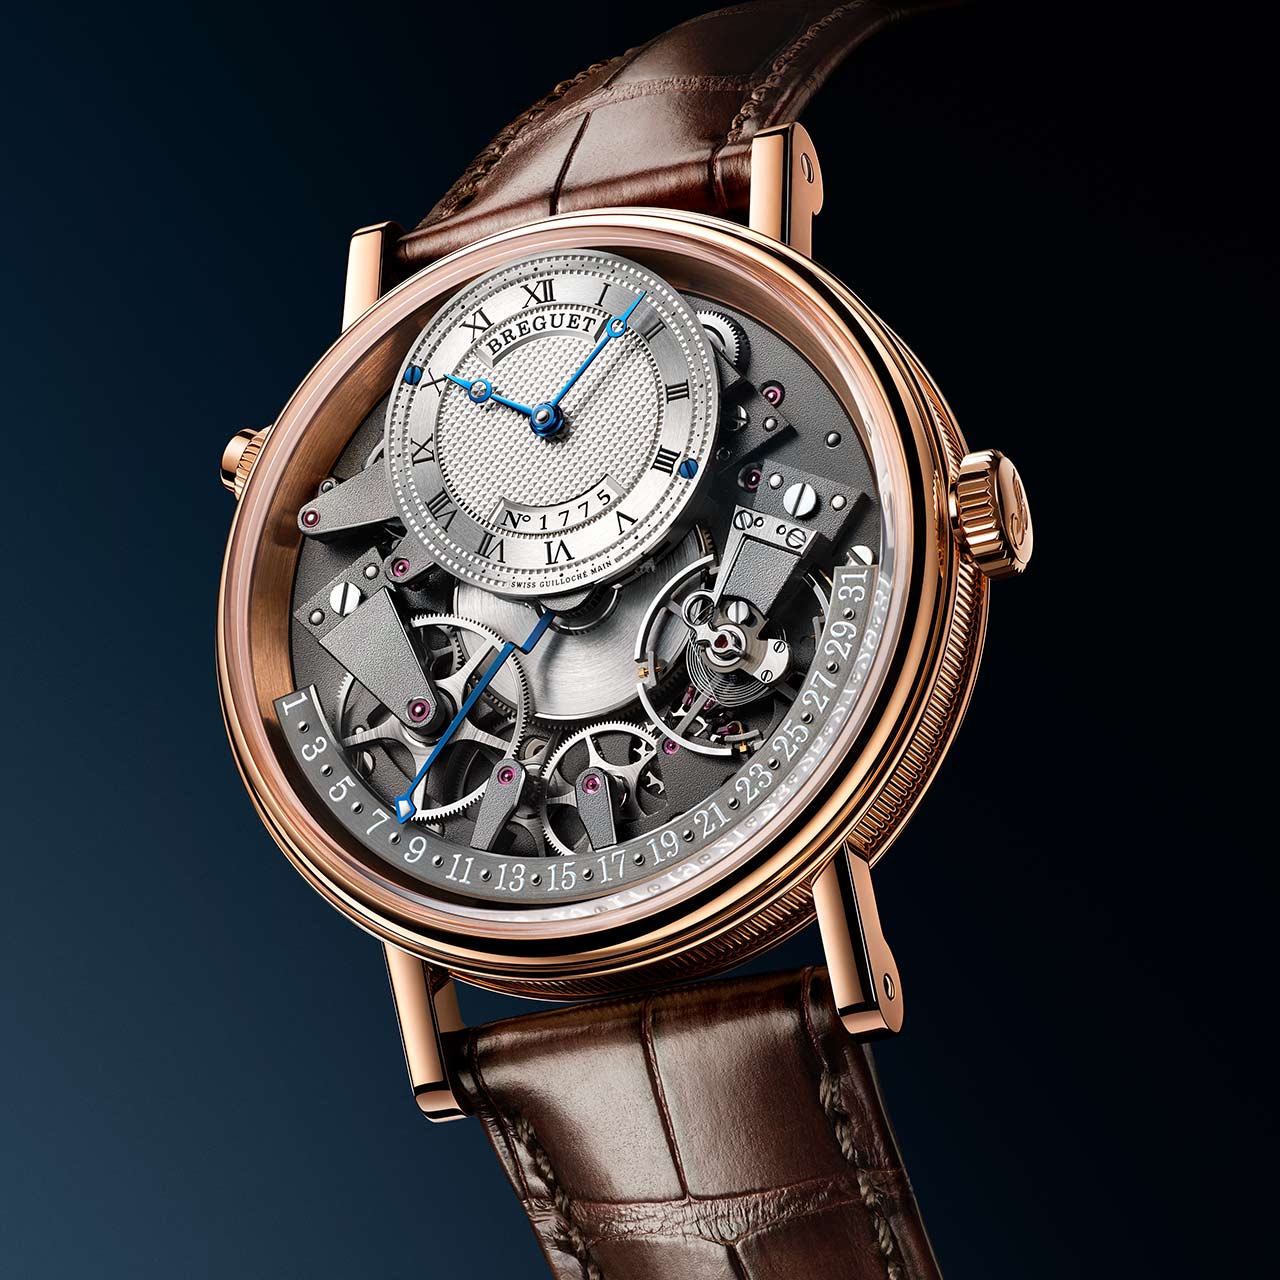 Breguet - Tradition Quantième Rétrograde 7597 | Time and Watches ...